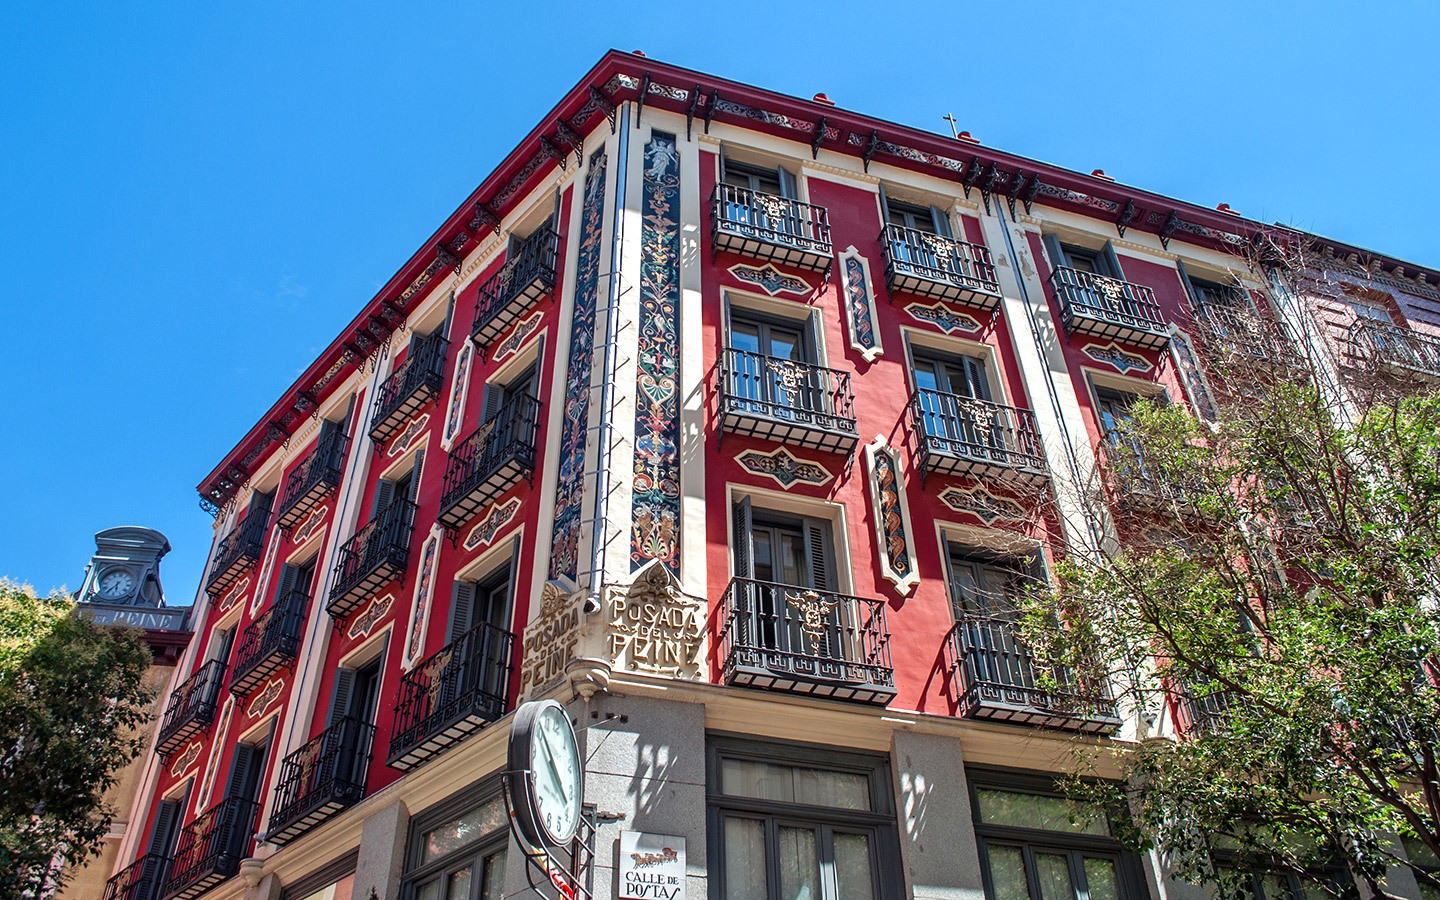 Edificios coloridos en Madrid